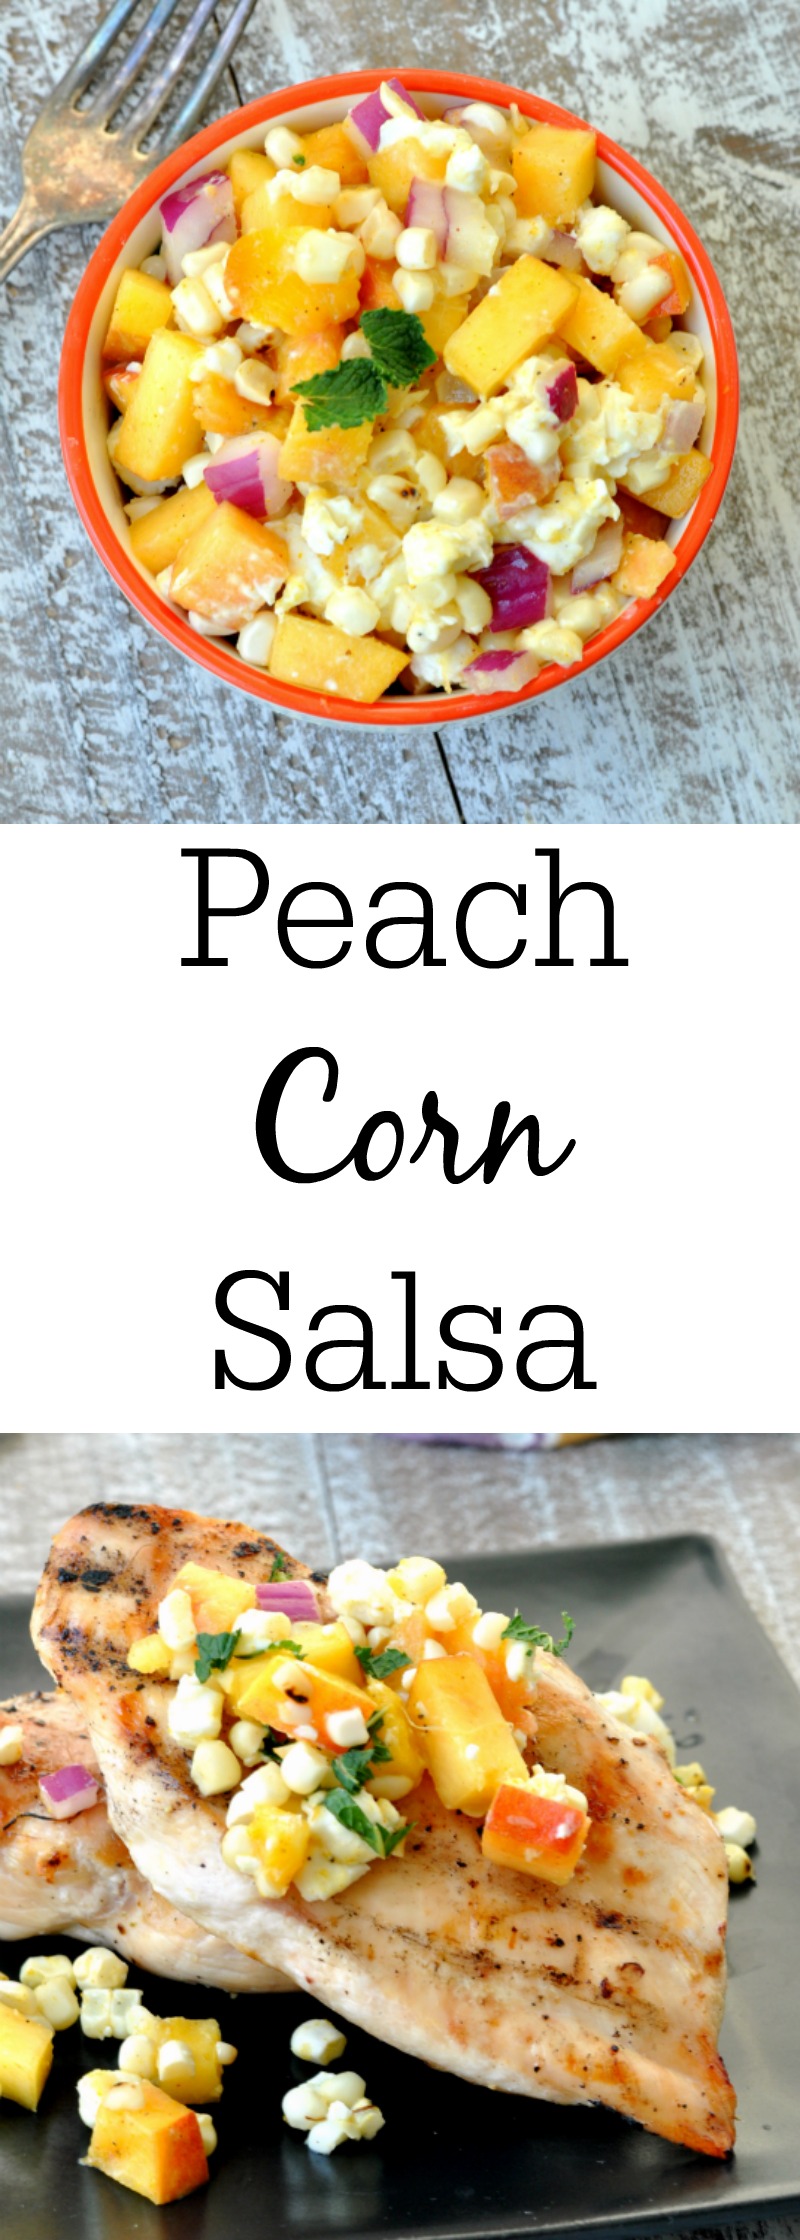 Curried Peach Corn Salsa